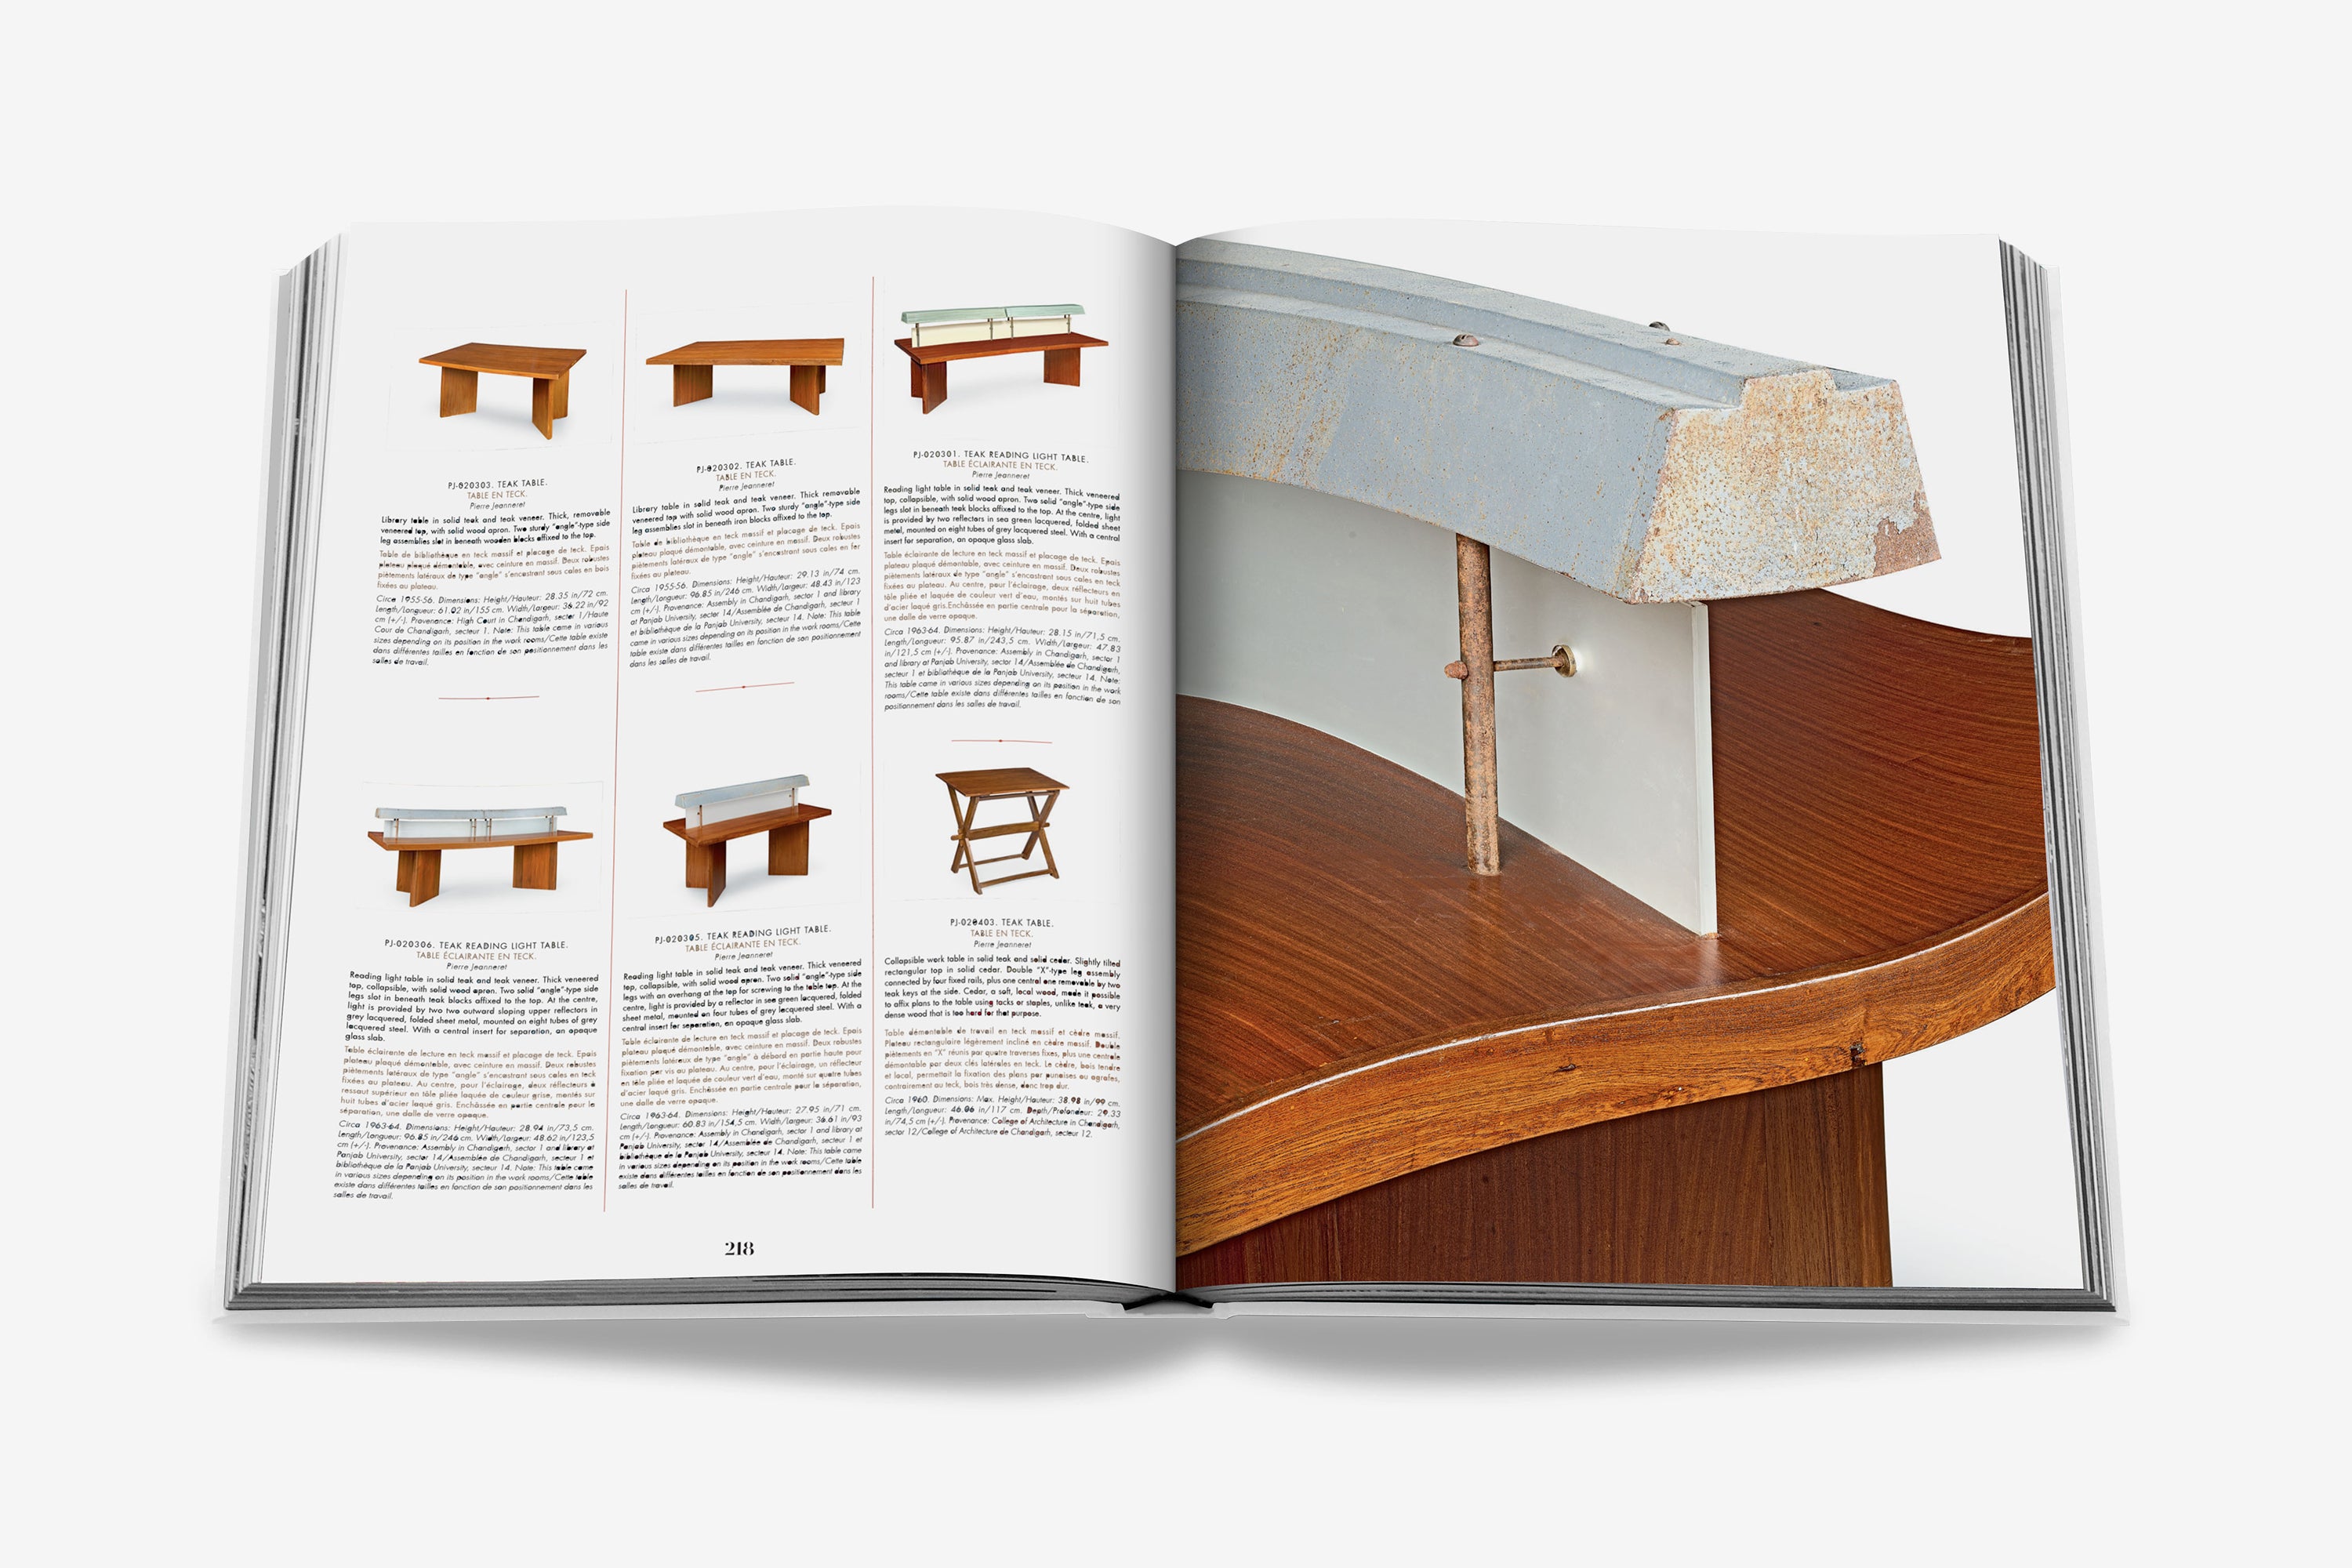 Catalogue Raisonné du Mobilier: Jeanneret Chandigarh book | ASSOULINE